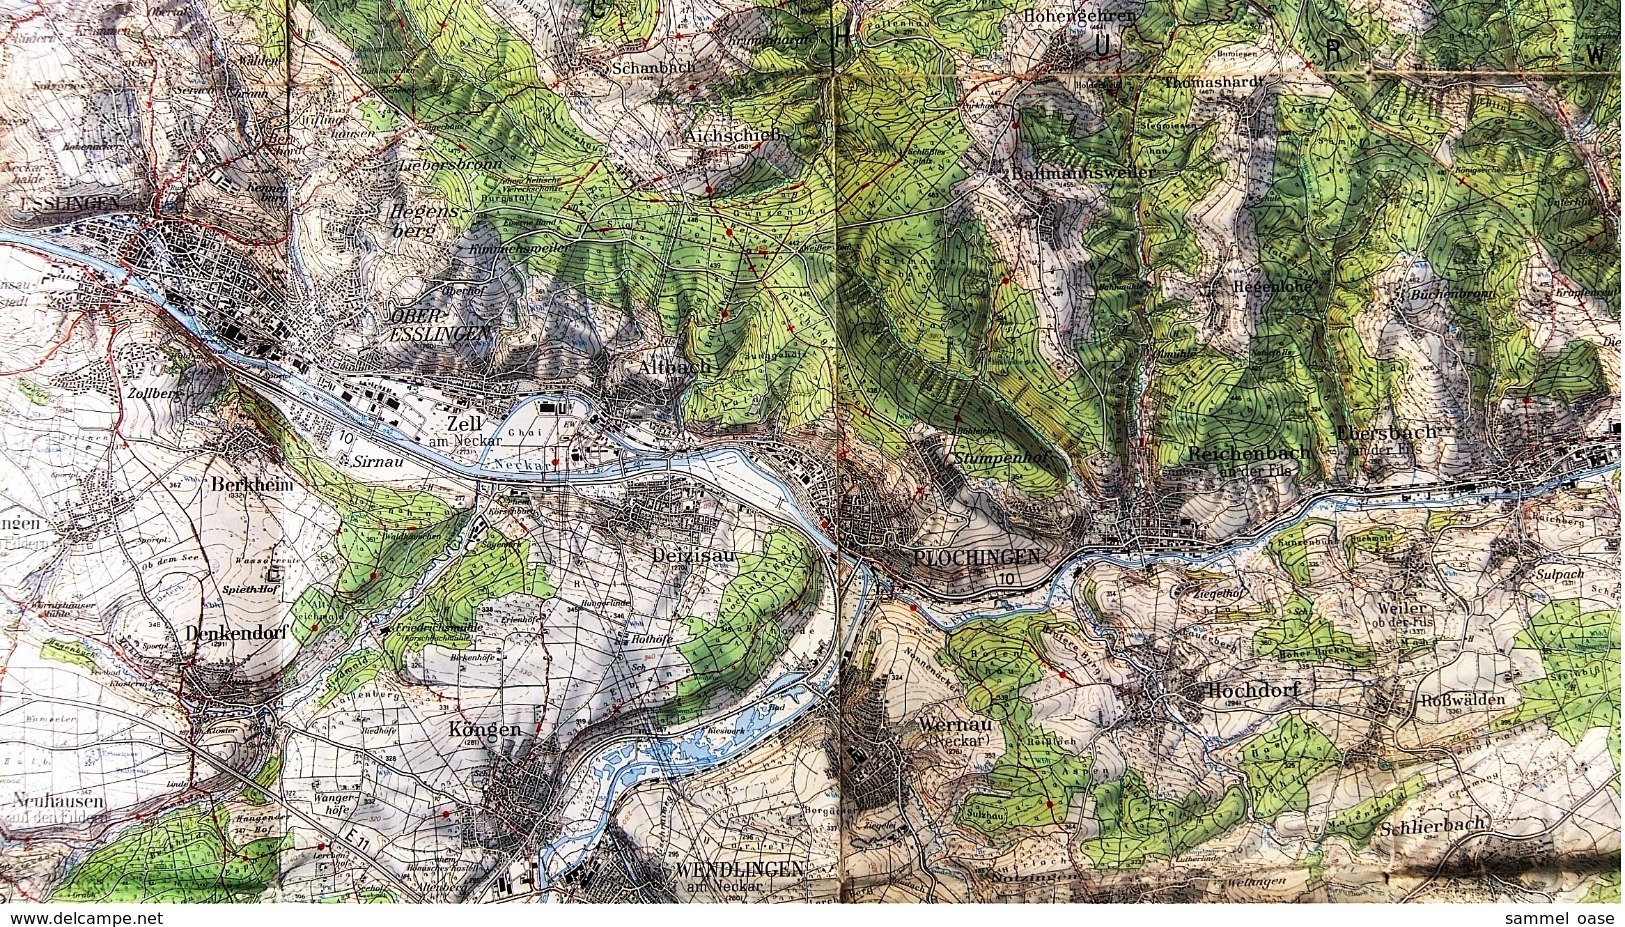 Topographische Karte  - Stuttgart Und Umgebung  -  Ausgabe Mit Wanderwegen  -  Von 1968 - Mapamundis